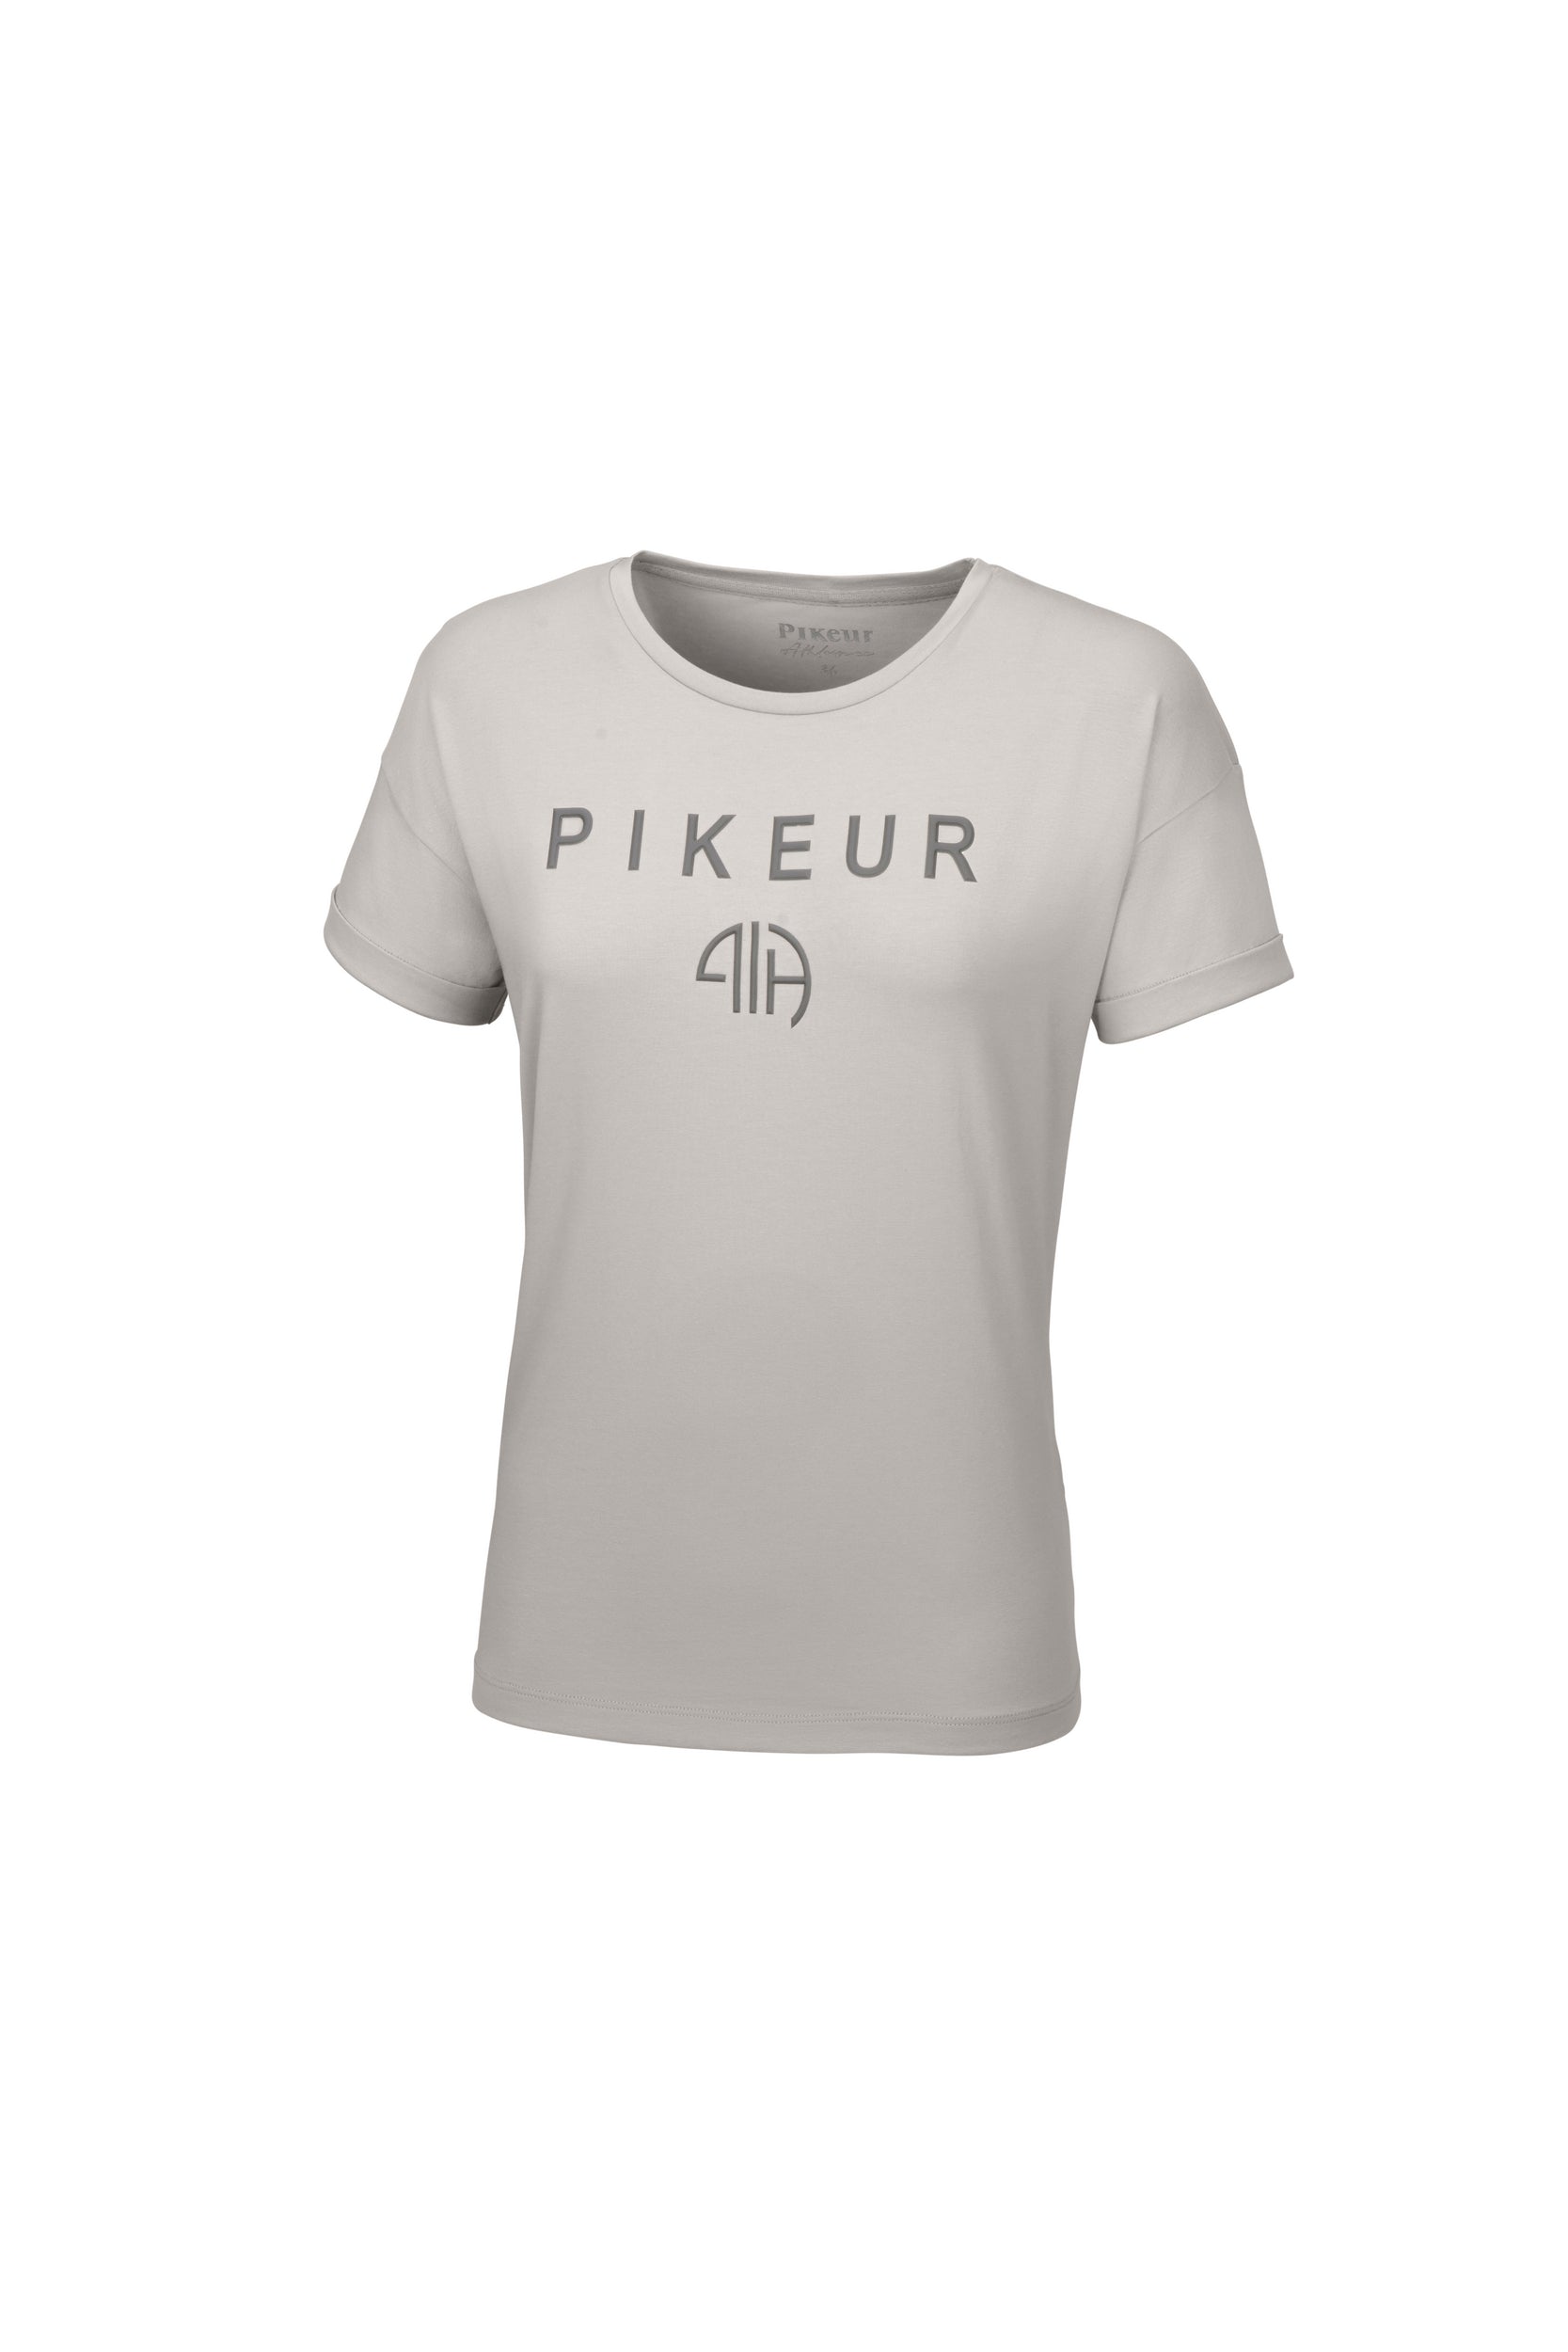 Pikeur Tiene t-shirt in Velvet grey